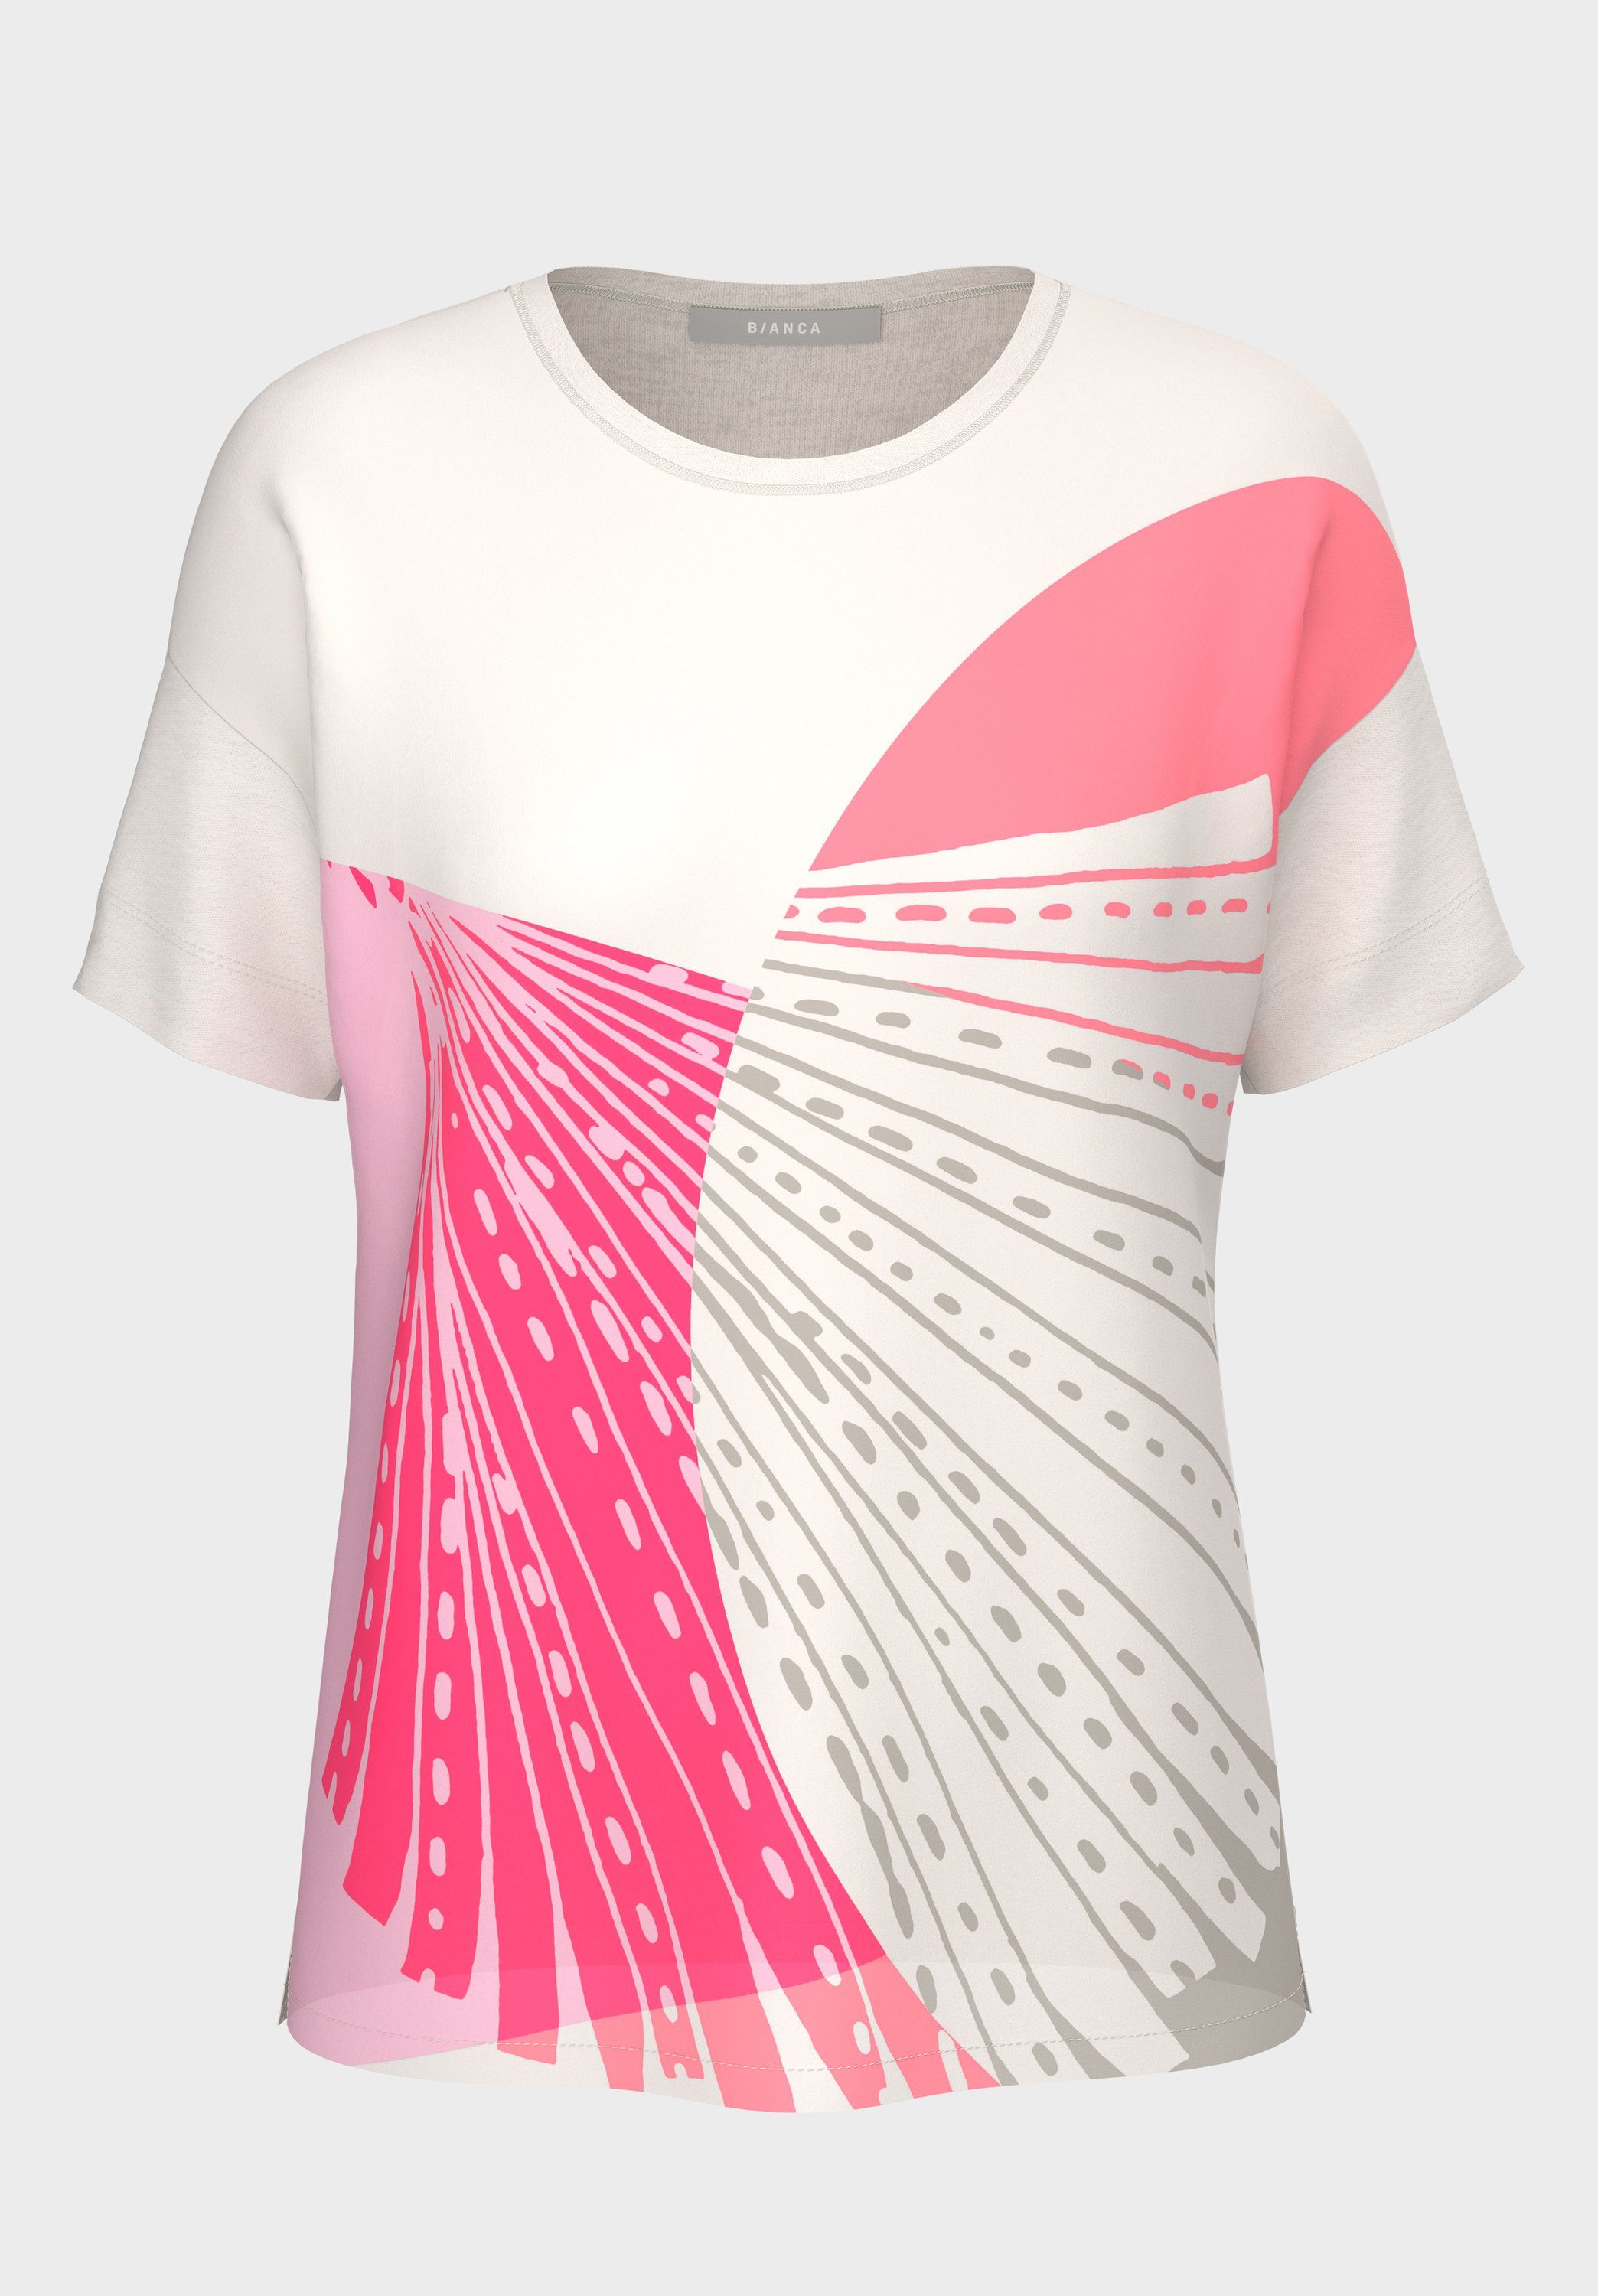 bianca Print-Shirt JULIE mit graphischem Frontmotiv in angesagten Farben